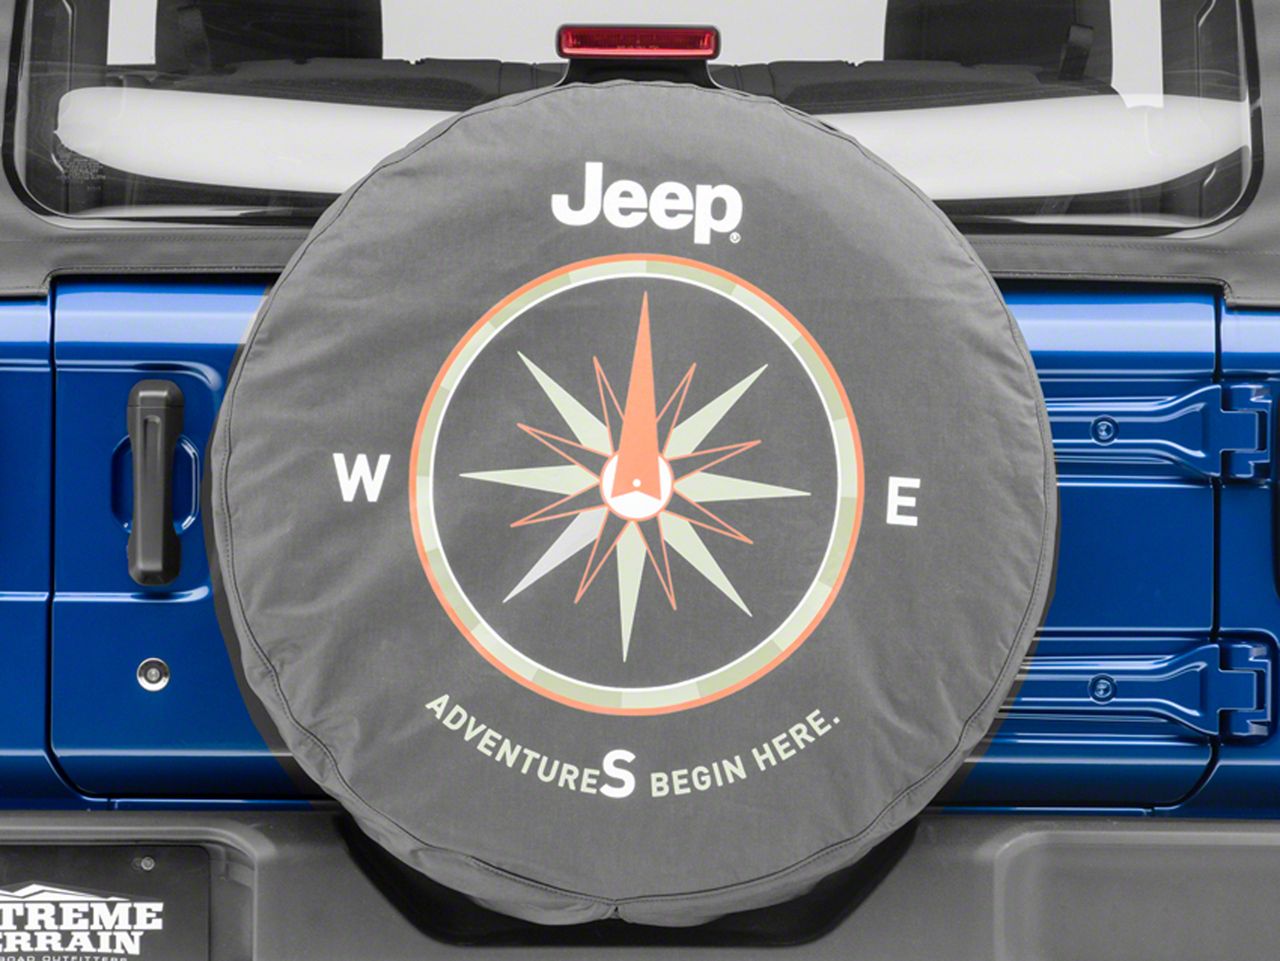 Mopar Jeep Wrangler Adventures Begin Here Spare Tire Cover; Denim J129628  (66-18 Jeep CJ5, CJ7, Wrangler YJ, TJ  JK) Free Shipping